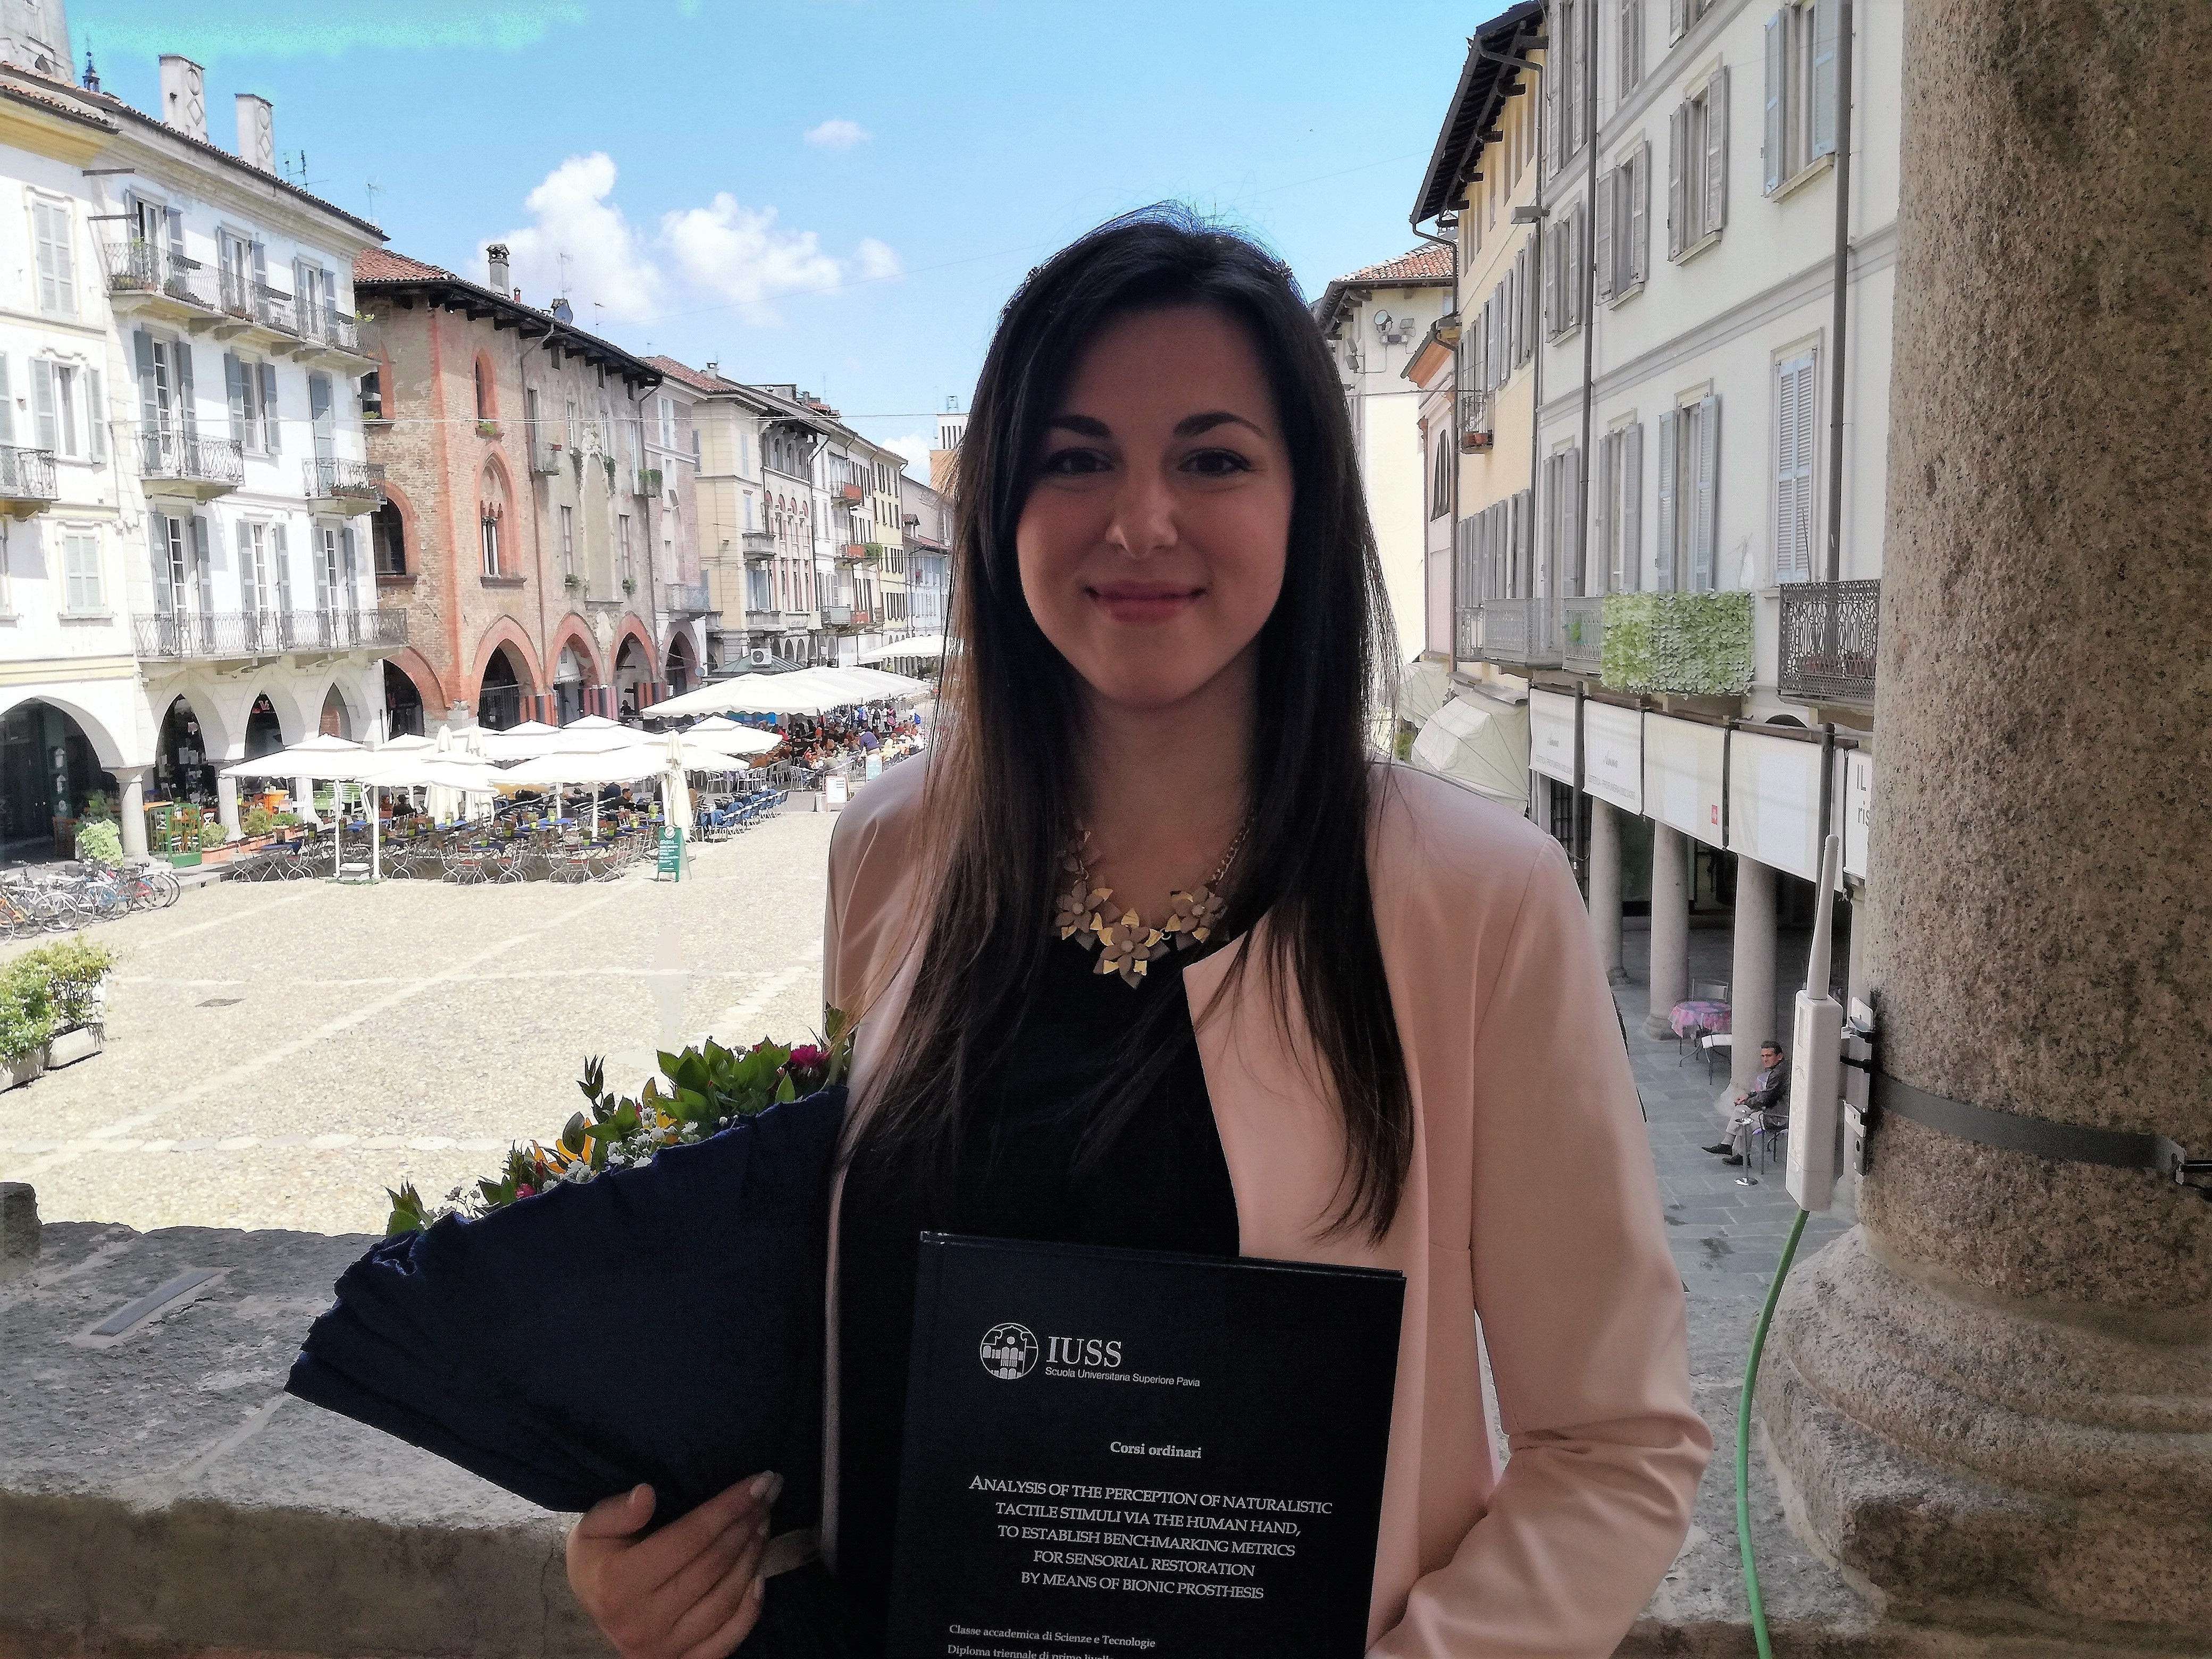 Sant’Agata di Puglia: La storia della studentessa Angela Mazzeo